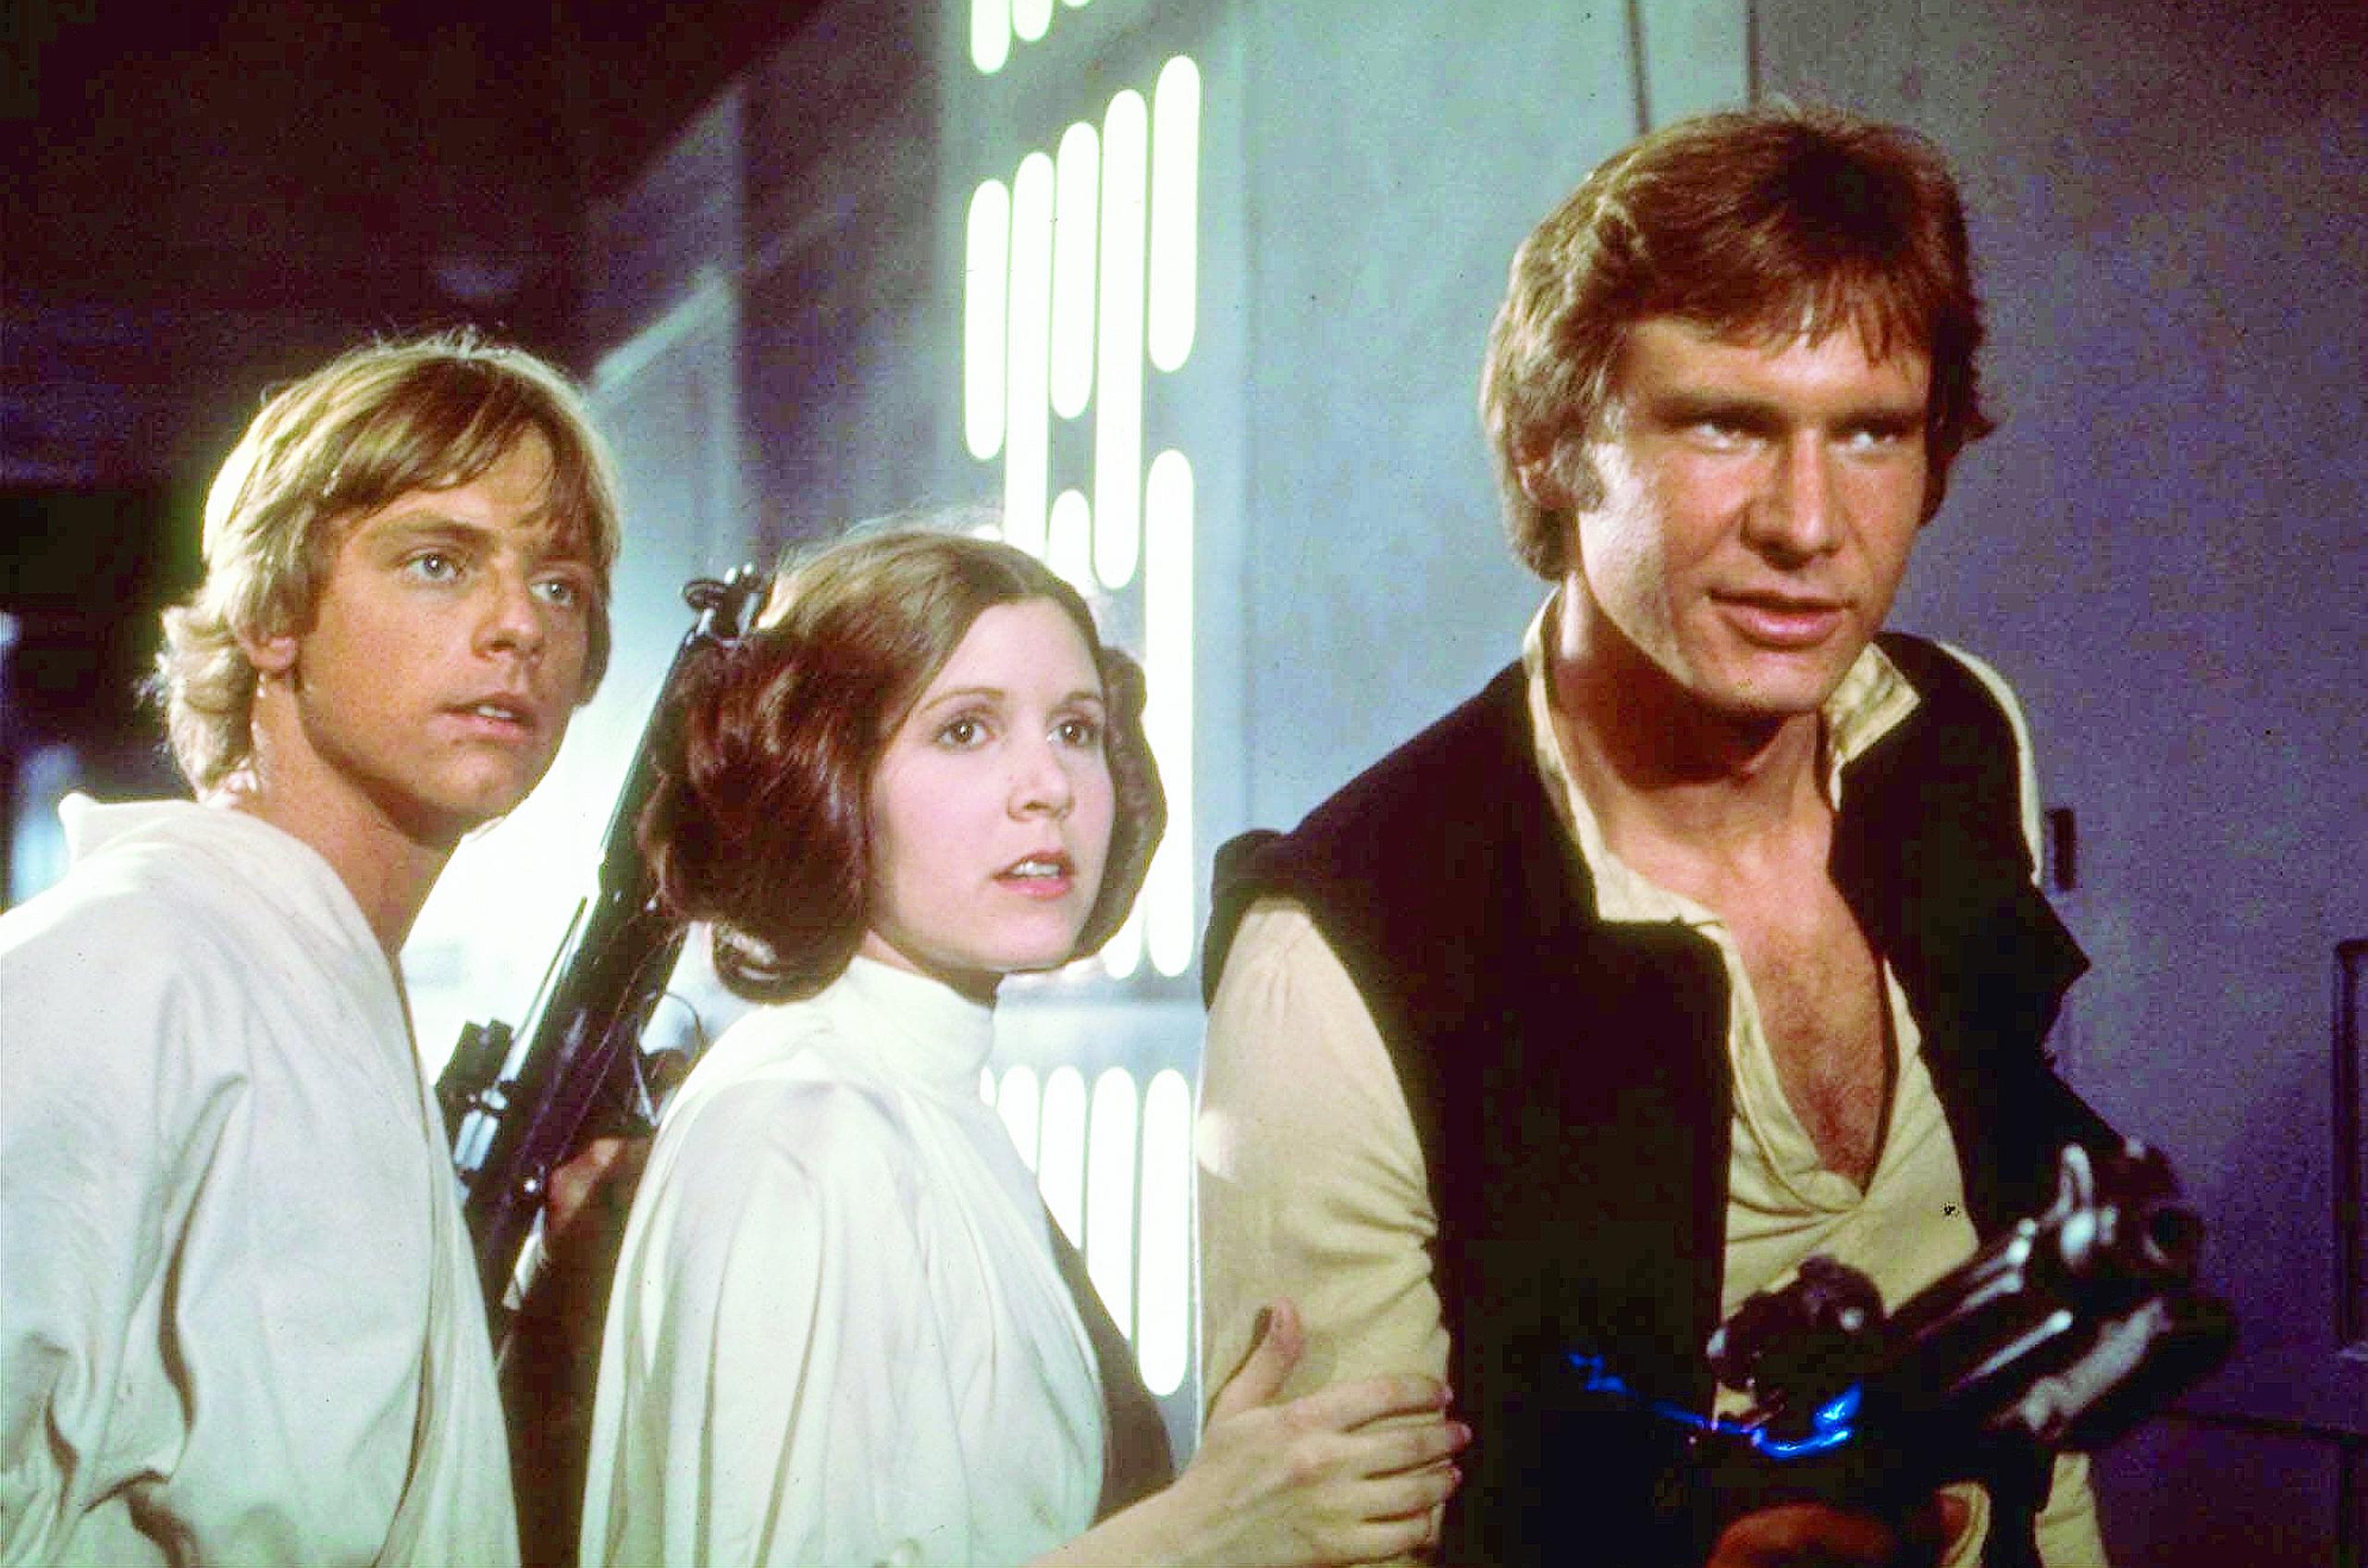 Desde su debut en 1977, Star Wars ha cautivado a millones de fanáticos en todo el mundo, convirtiéndose en una de las sagas cinematográficas más influyentes de todos los tiempos.